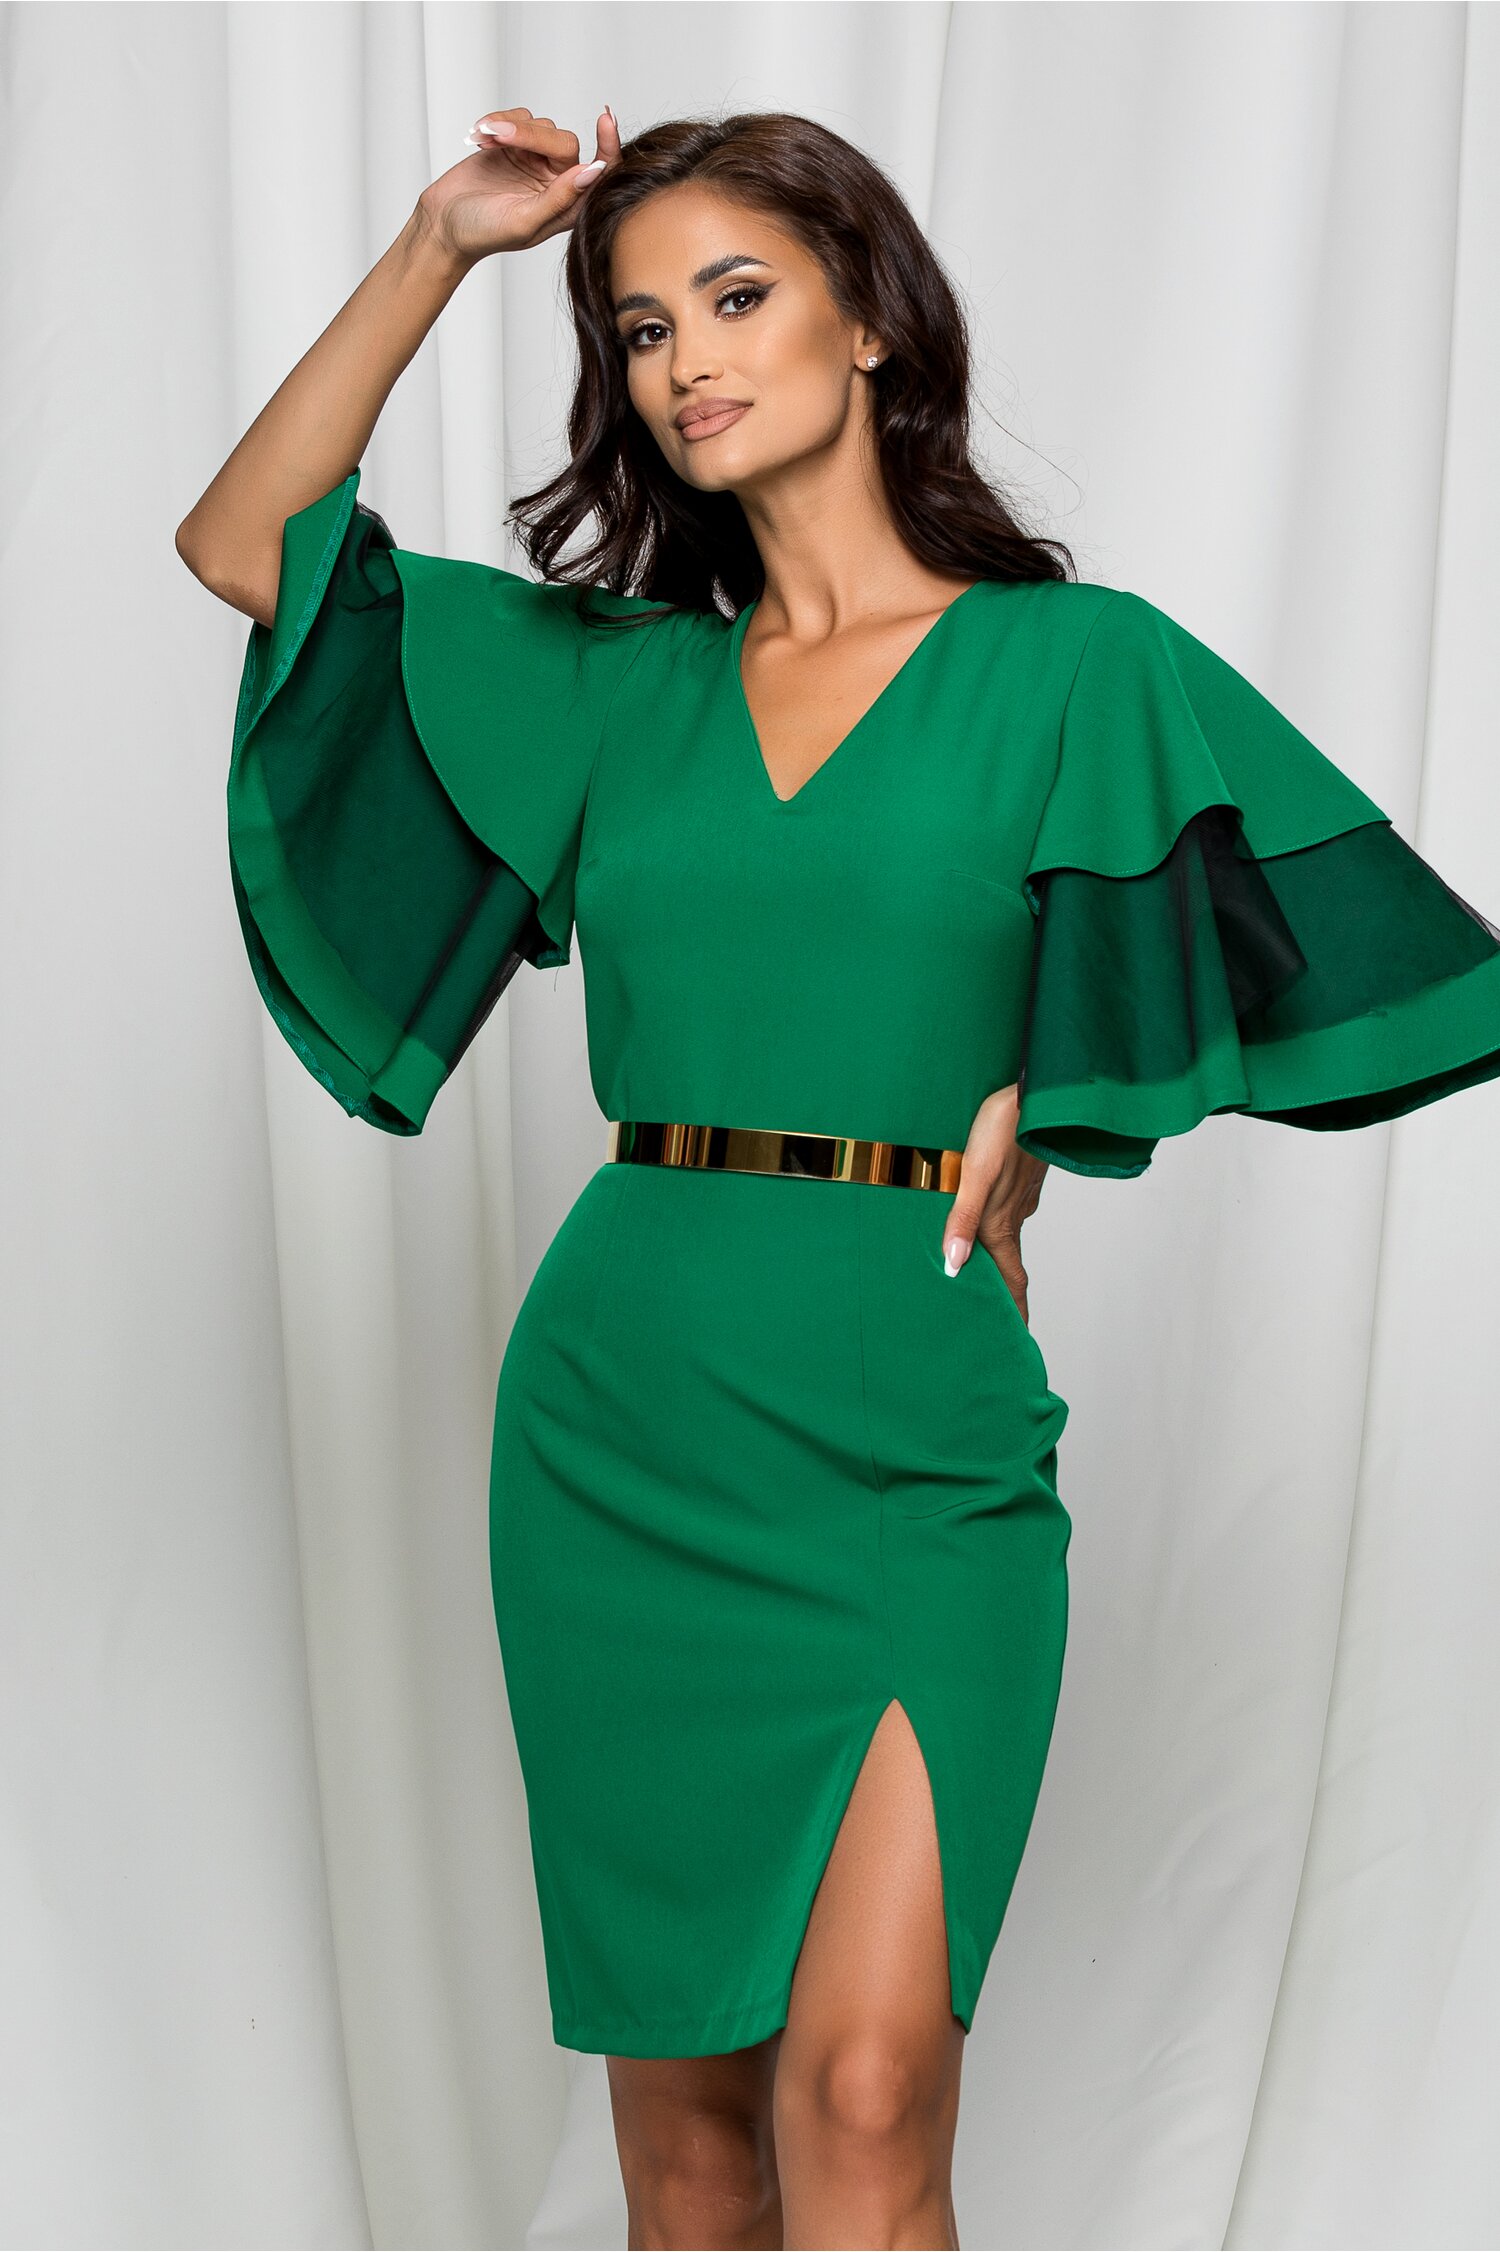 Rochie Dy Fashion Sara verde cu maneci evazate si crepeu in fata 2023 ❤️ Pret Super dyfashion imagine noua 2022